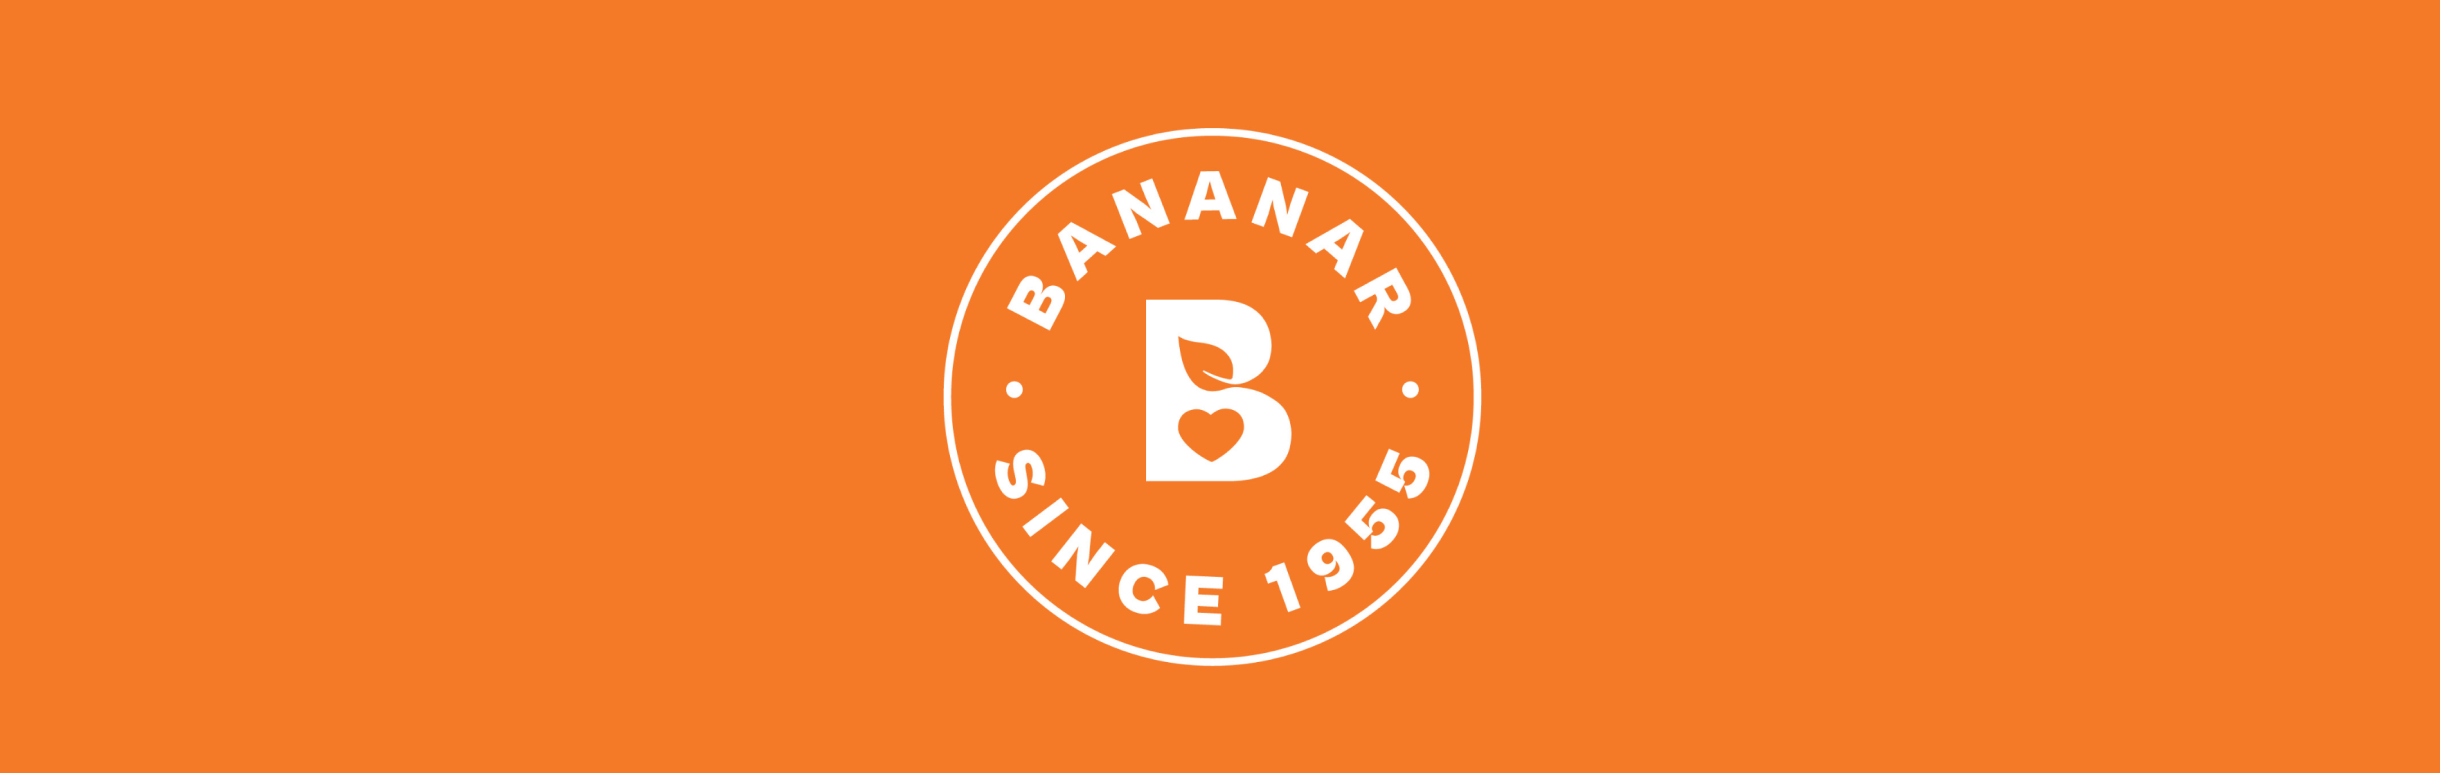 Bananar_9